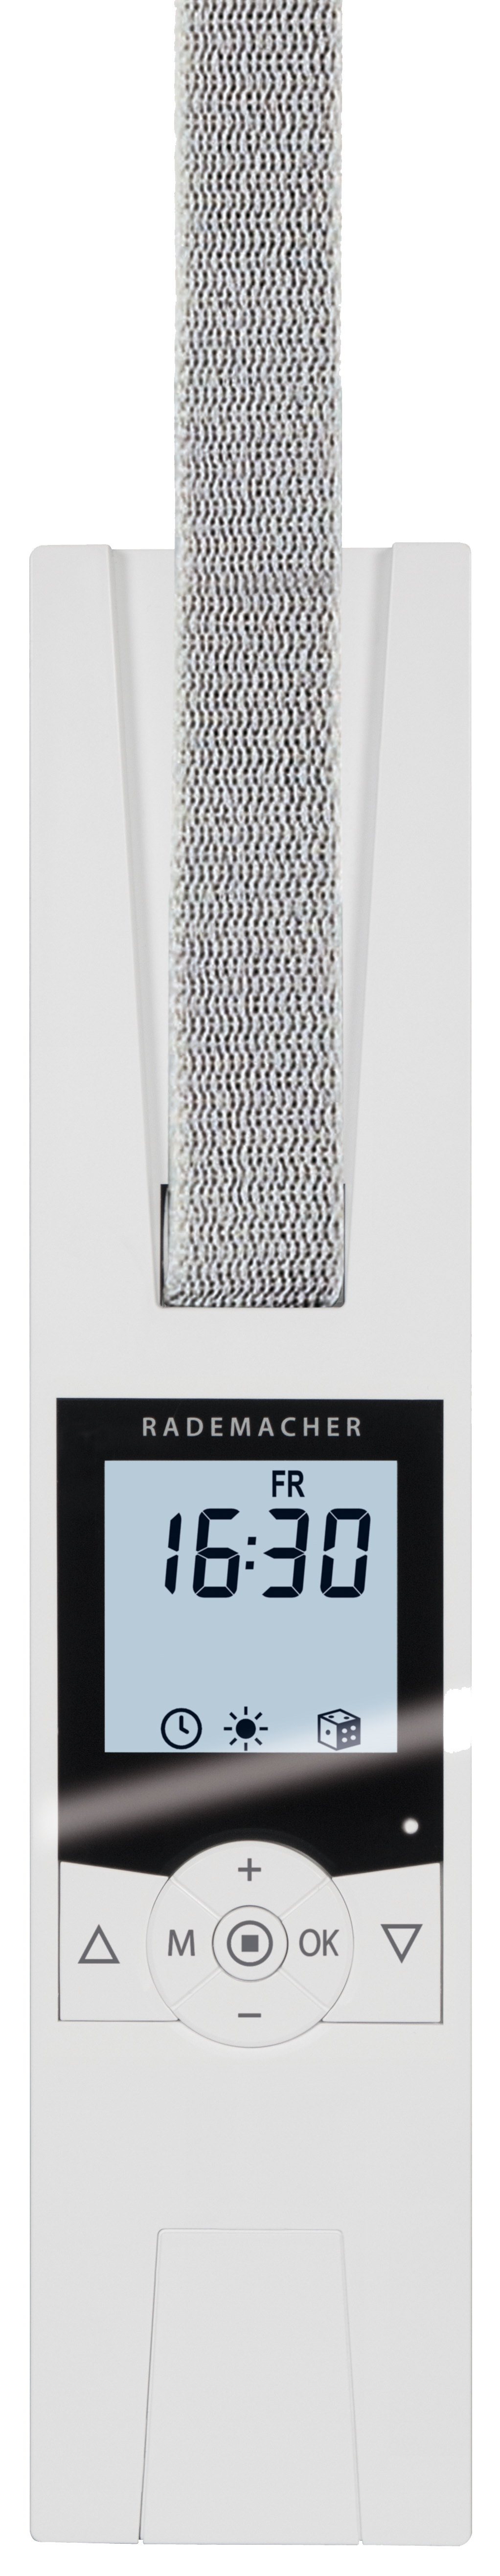 - RolloTron Plus Rademacher 1705-UW Comfort